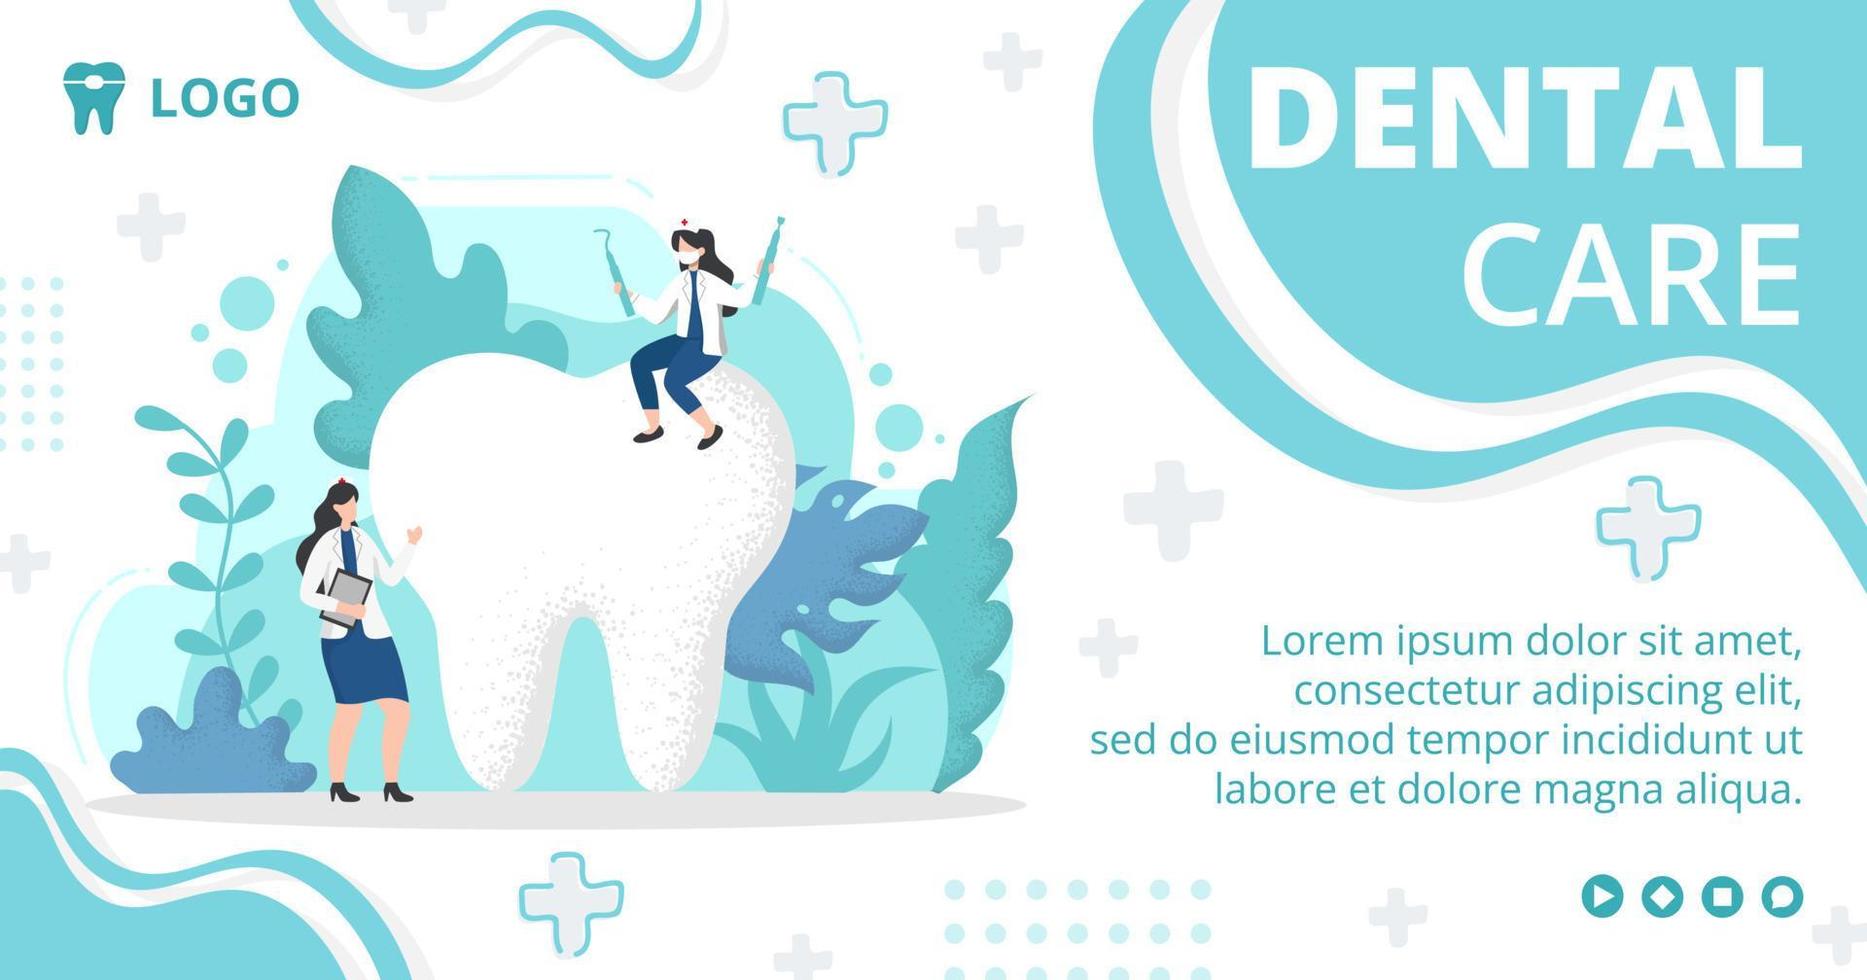 Publicación de ilustración de diseño plano dental editable de fondo cuadrado adecuado para redes sociales, alimentación, tarjetas, saludos, anuncios impresos y web en Internet vector